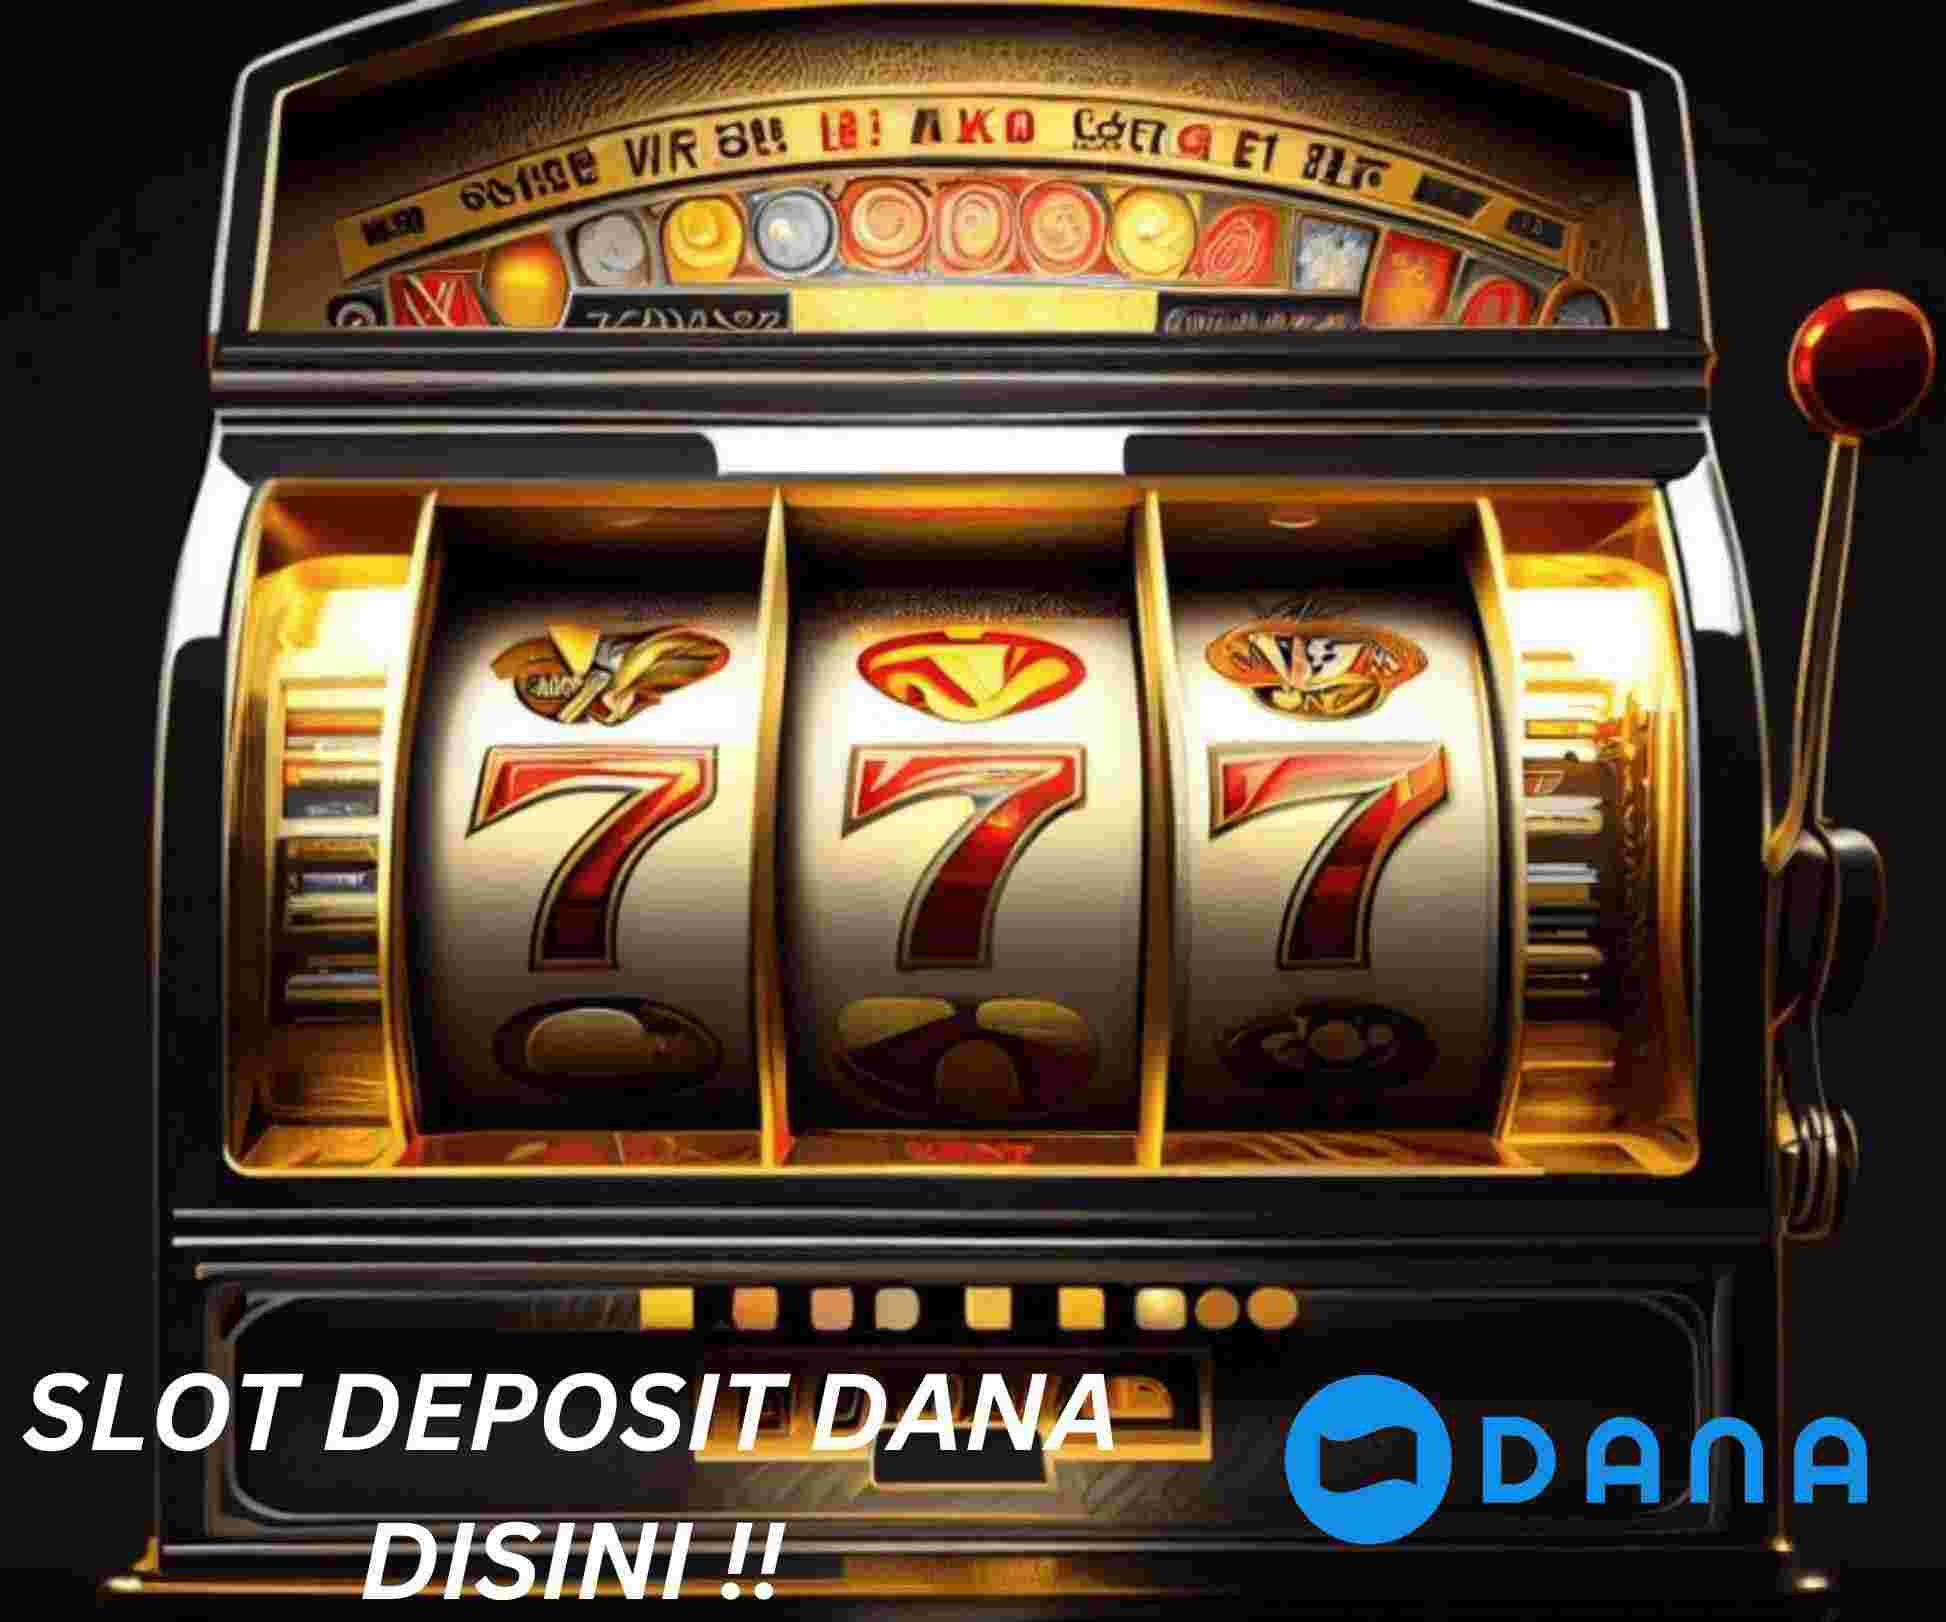 Latest Online Gambling Site Deposit Variation Slot Dana